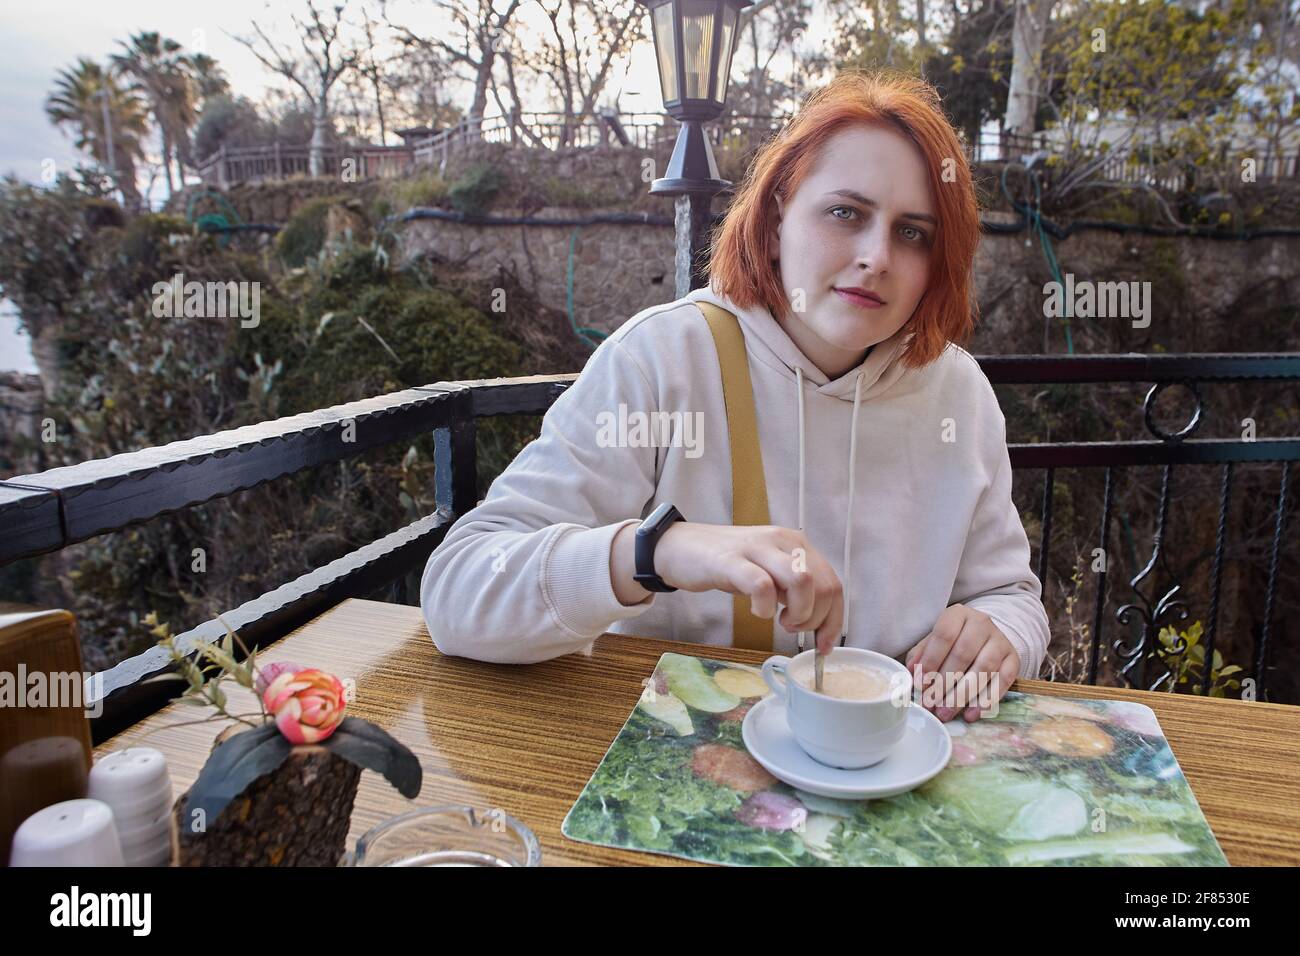 Terrasse de restaurant en bord de mer à Antalya, Turquie, jeune femme européenne aux cheveux rouges se détendant à table avec une tasse de café. Banque D'Images